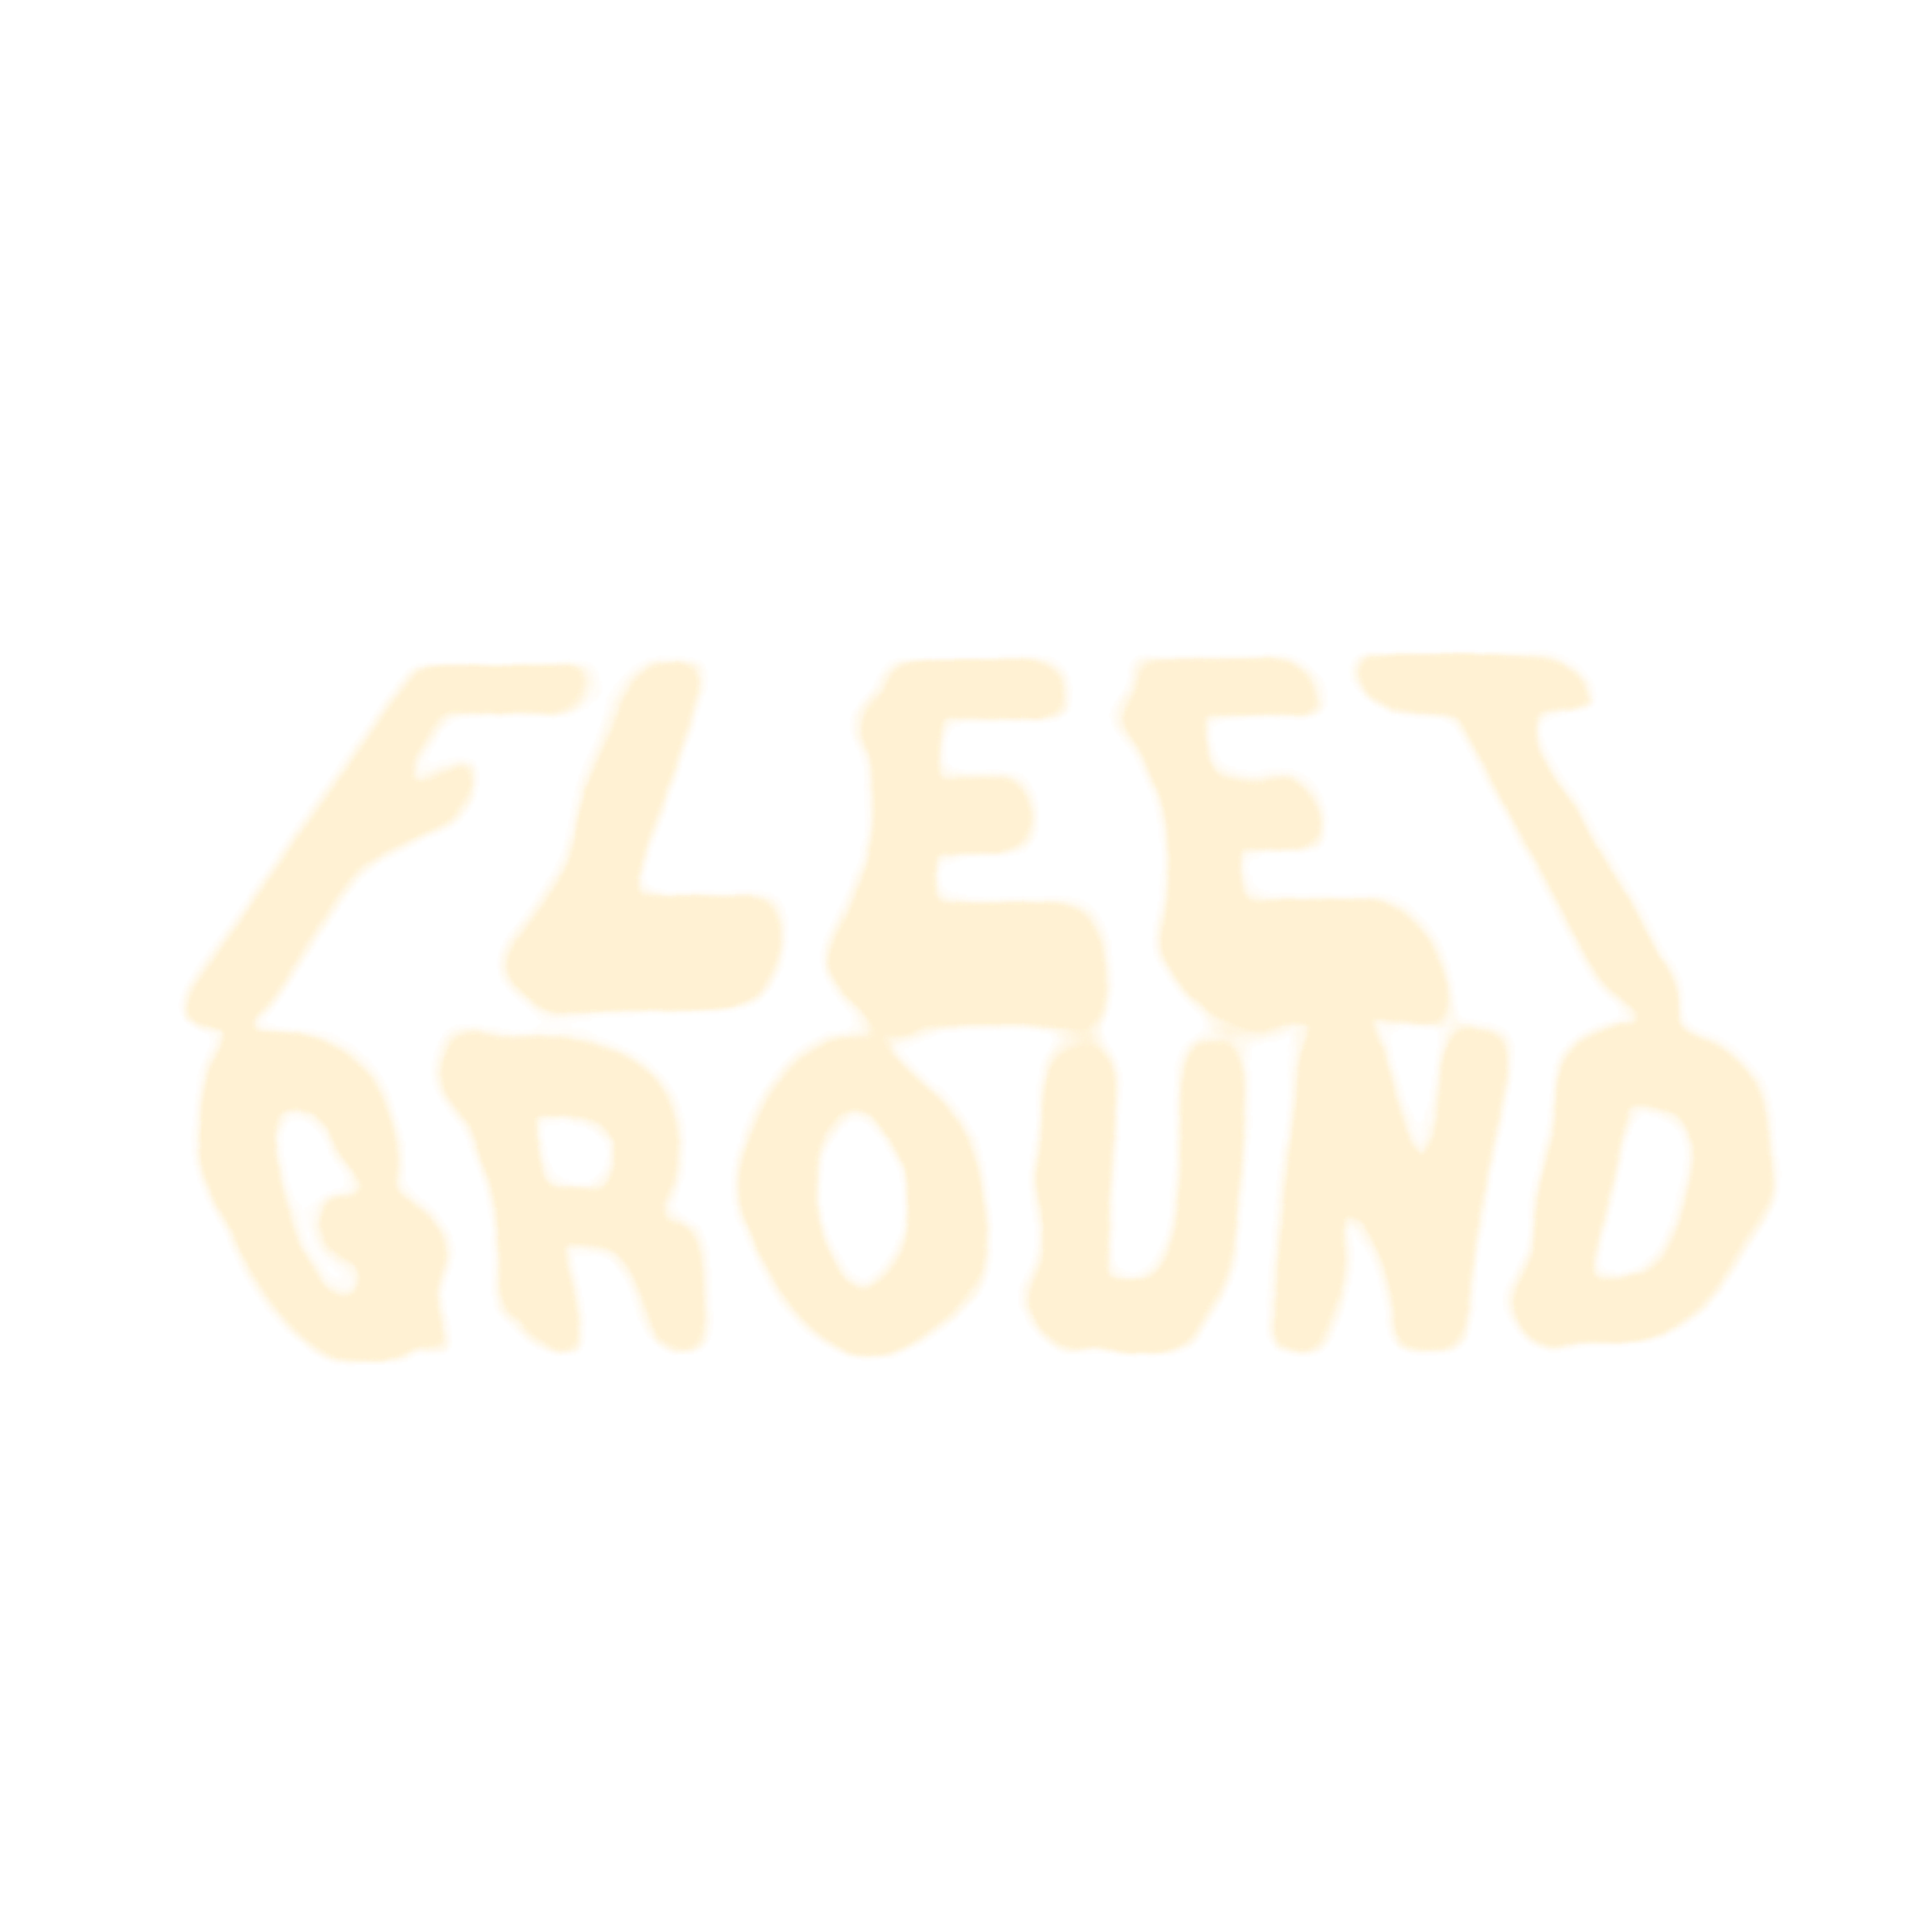 fleet ground